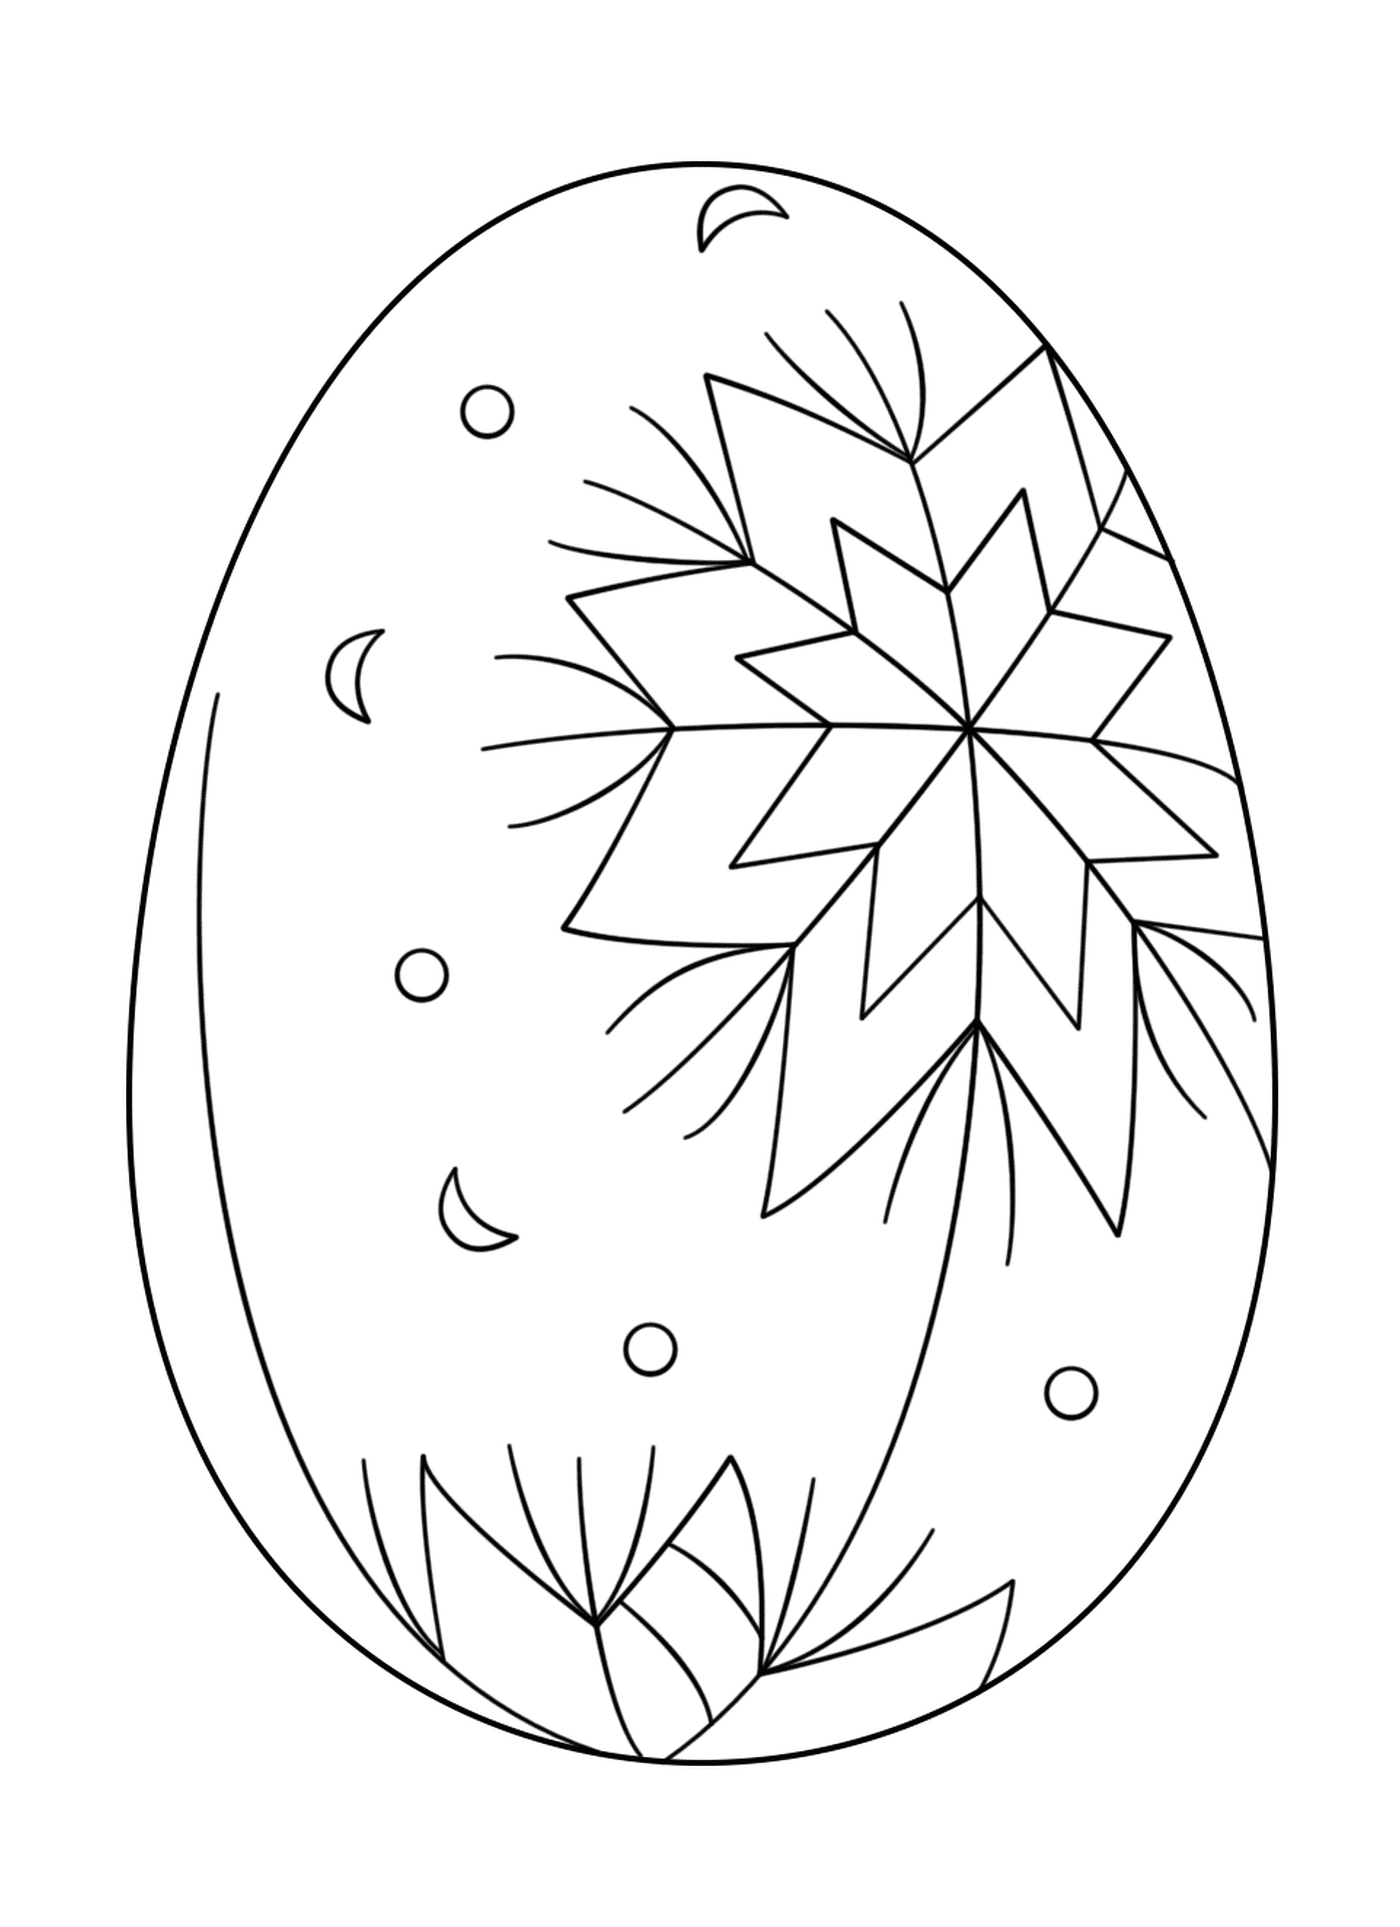   Oeuf de Pâques avec motif abstrait_2 